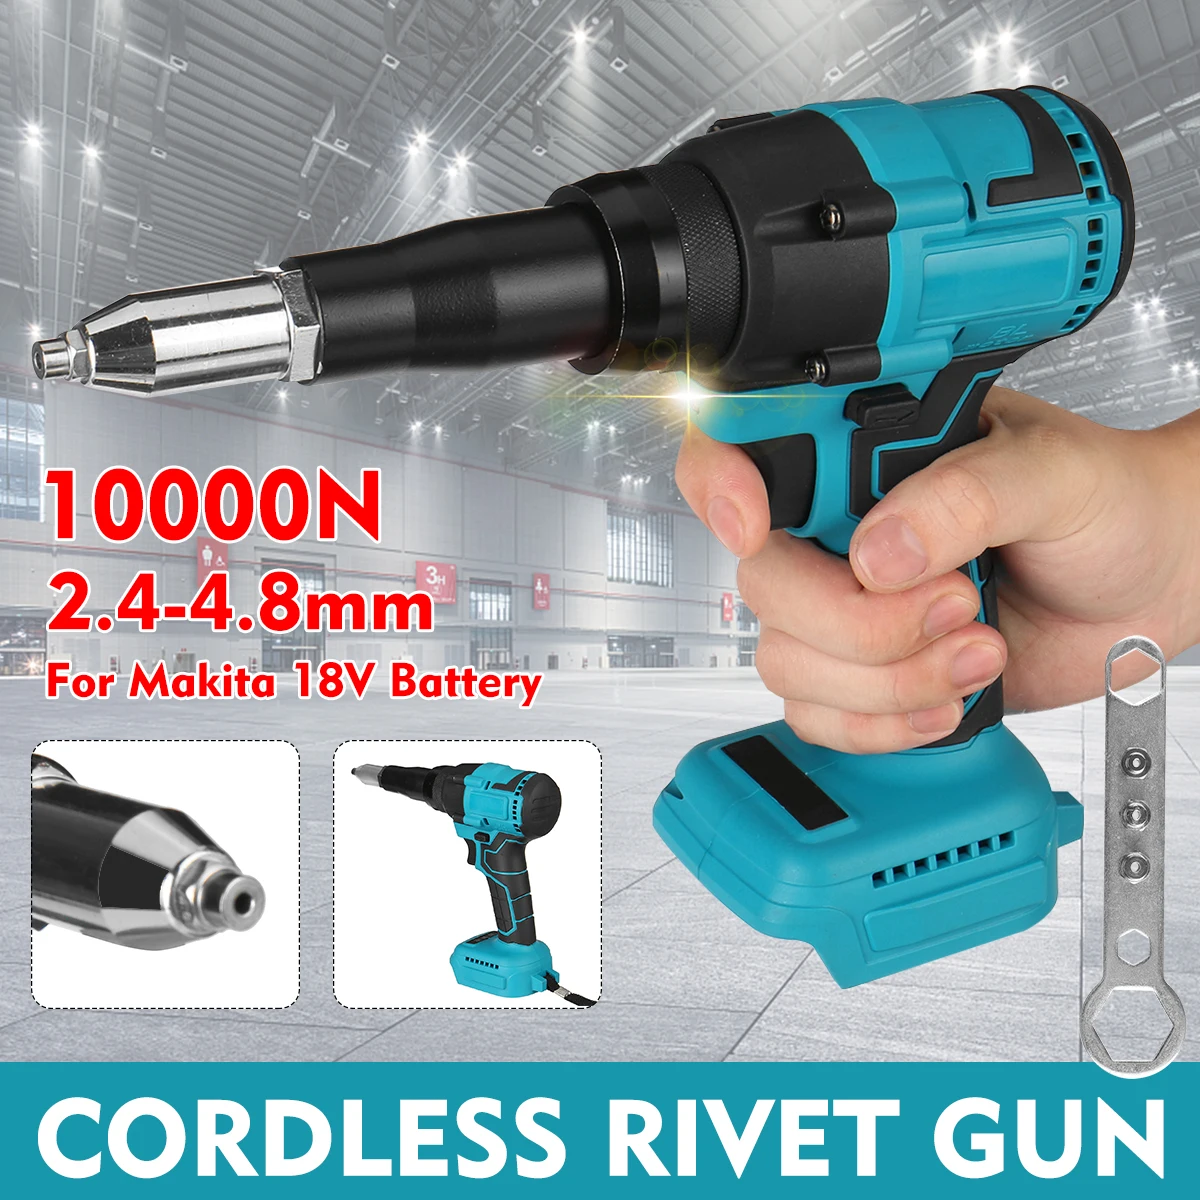 Electric Rivet Gun Cordless Rivet Nut Gun Drill Insert Nut Pull Riveting Tool 2.4-4.8mm With LED Light For Makita 18V Battery